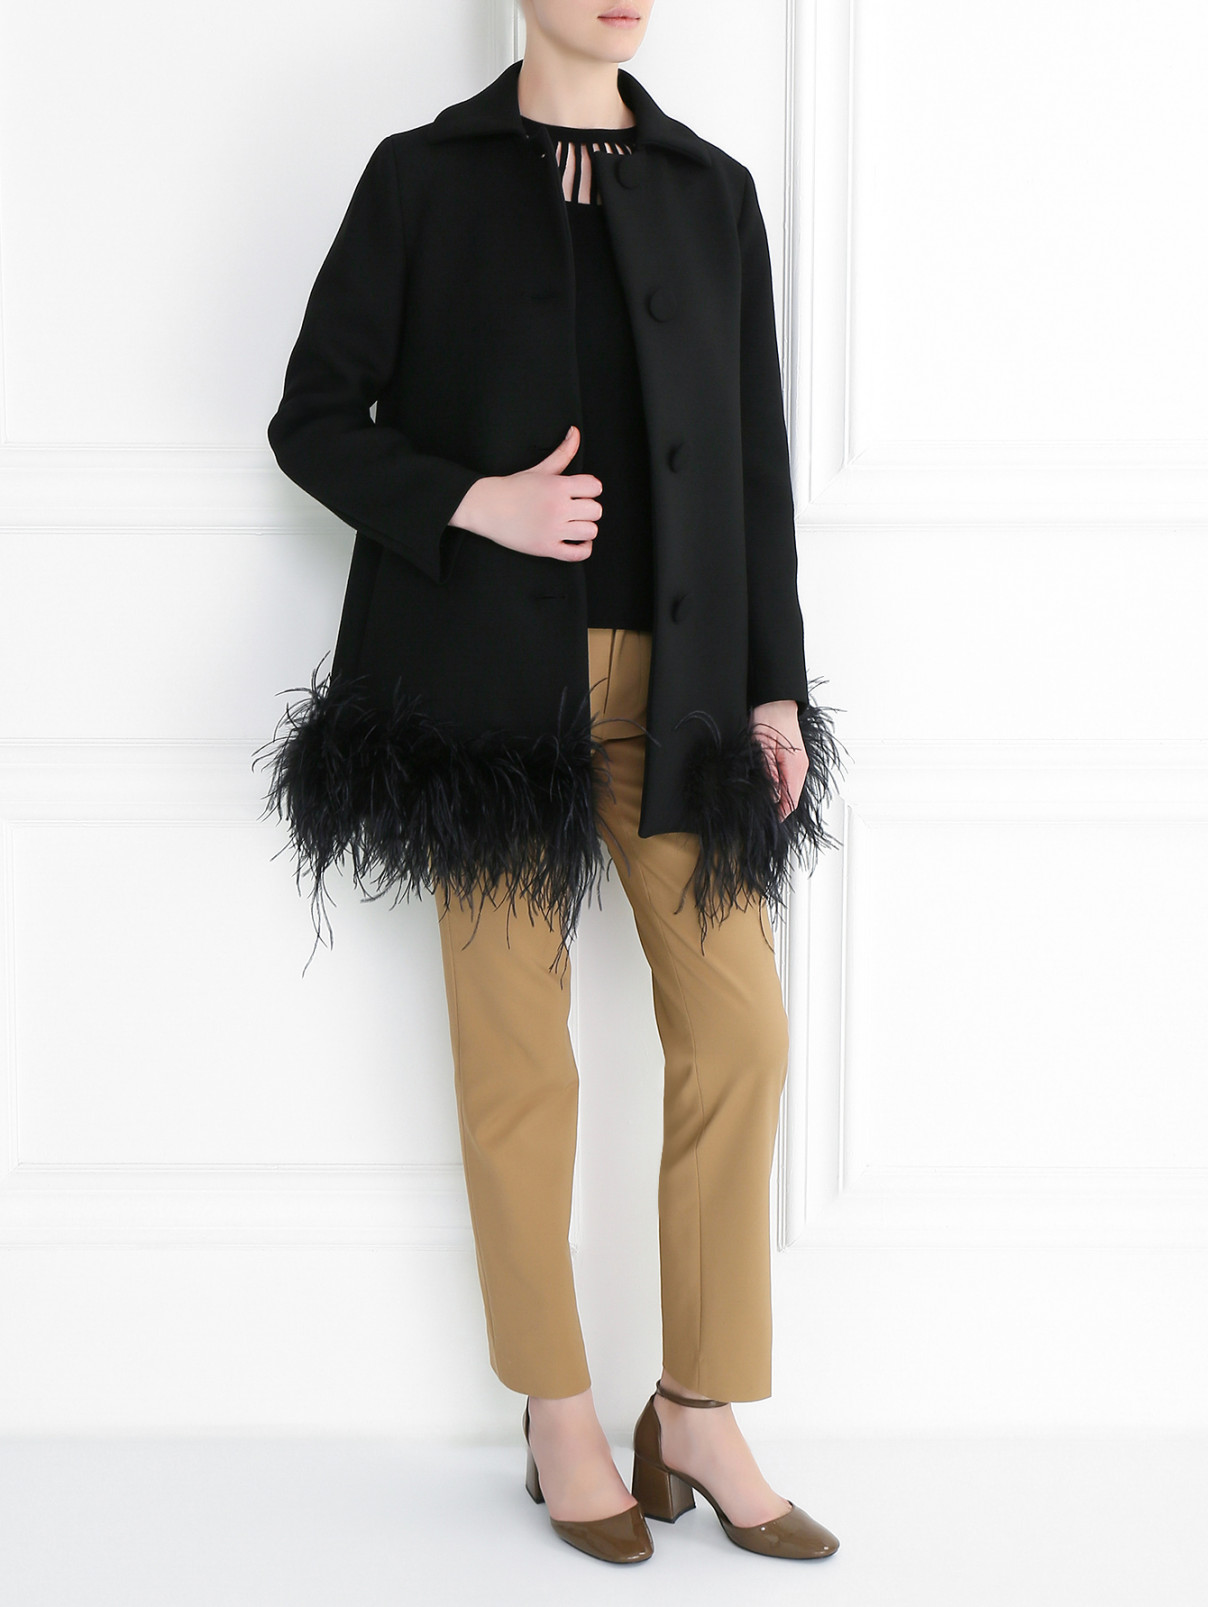 Однобортное пальто декорированное перьями страуса Moschino Boutique  –  Модель Общий вид  – Цвет:  Черный